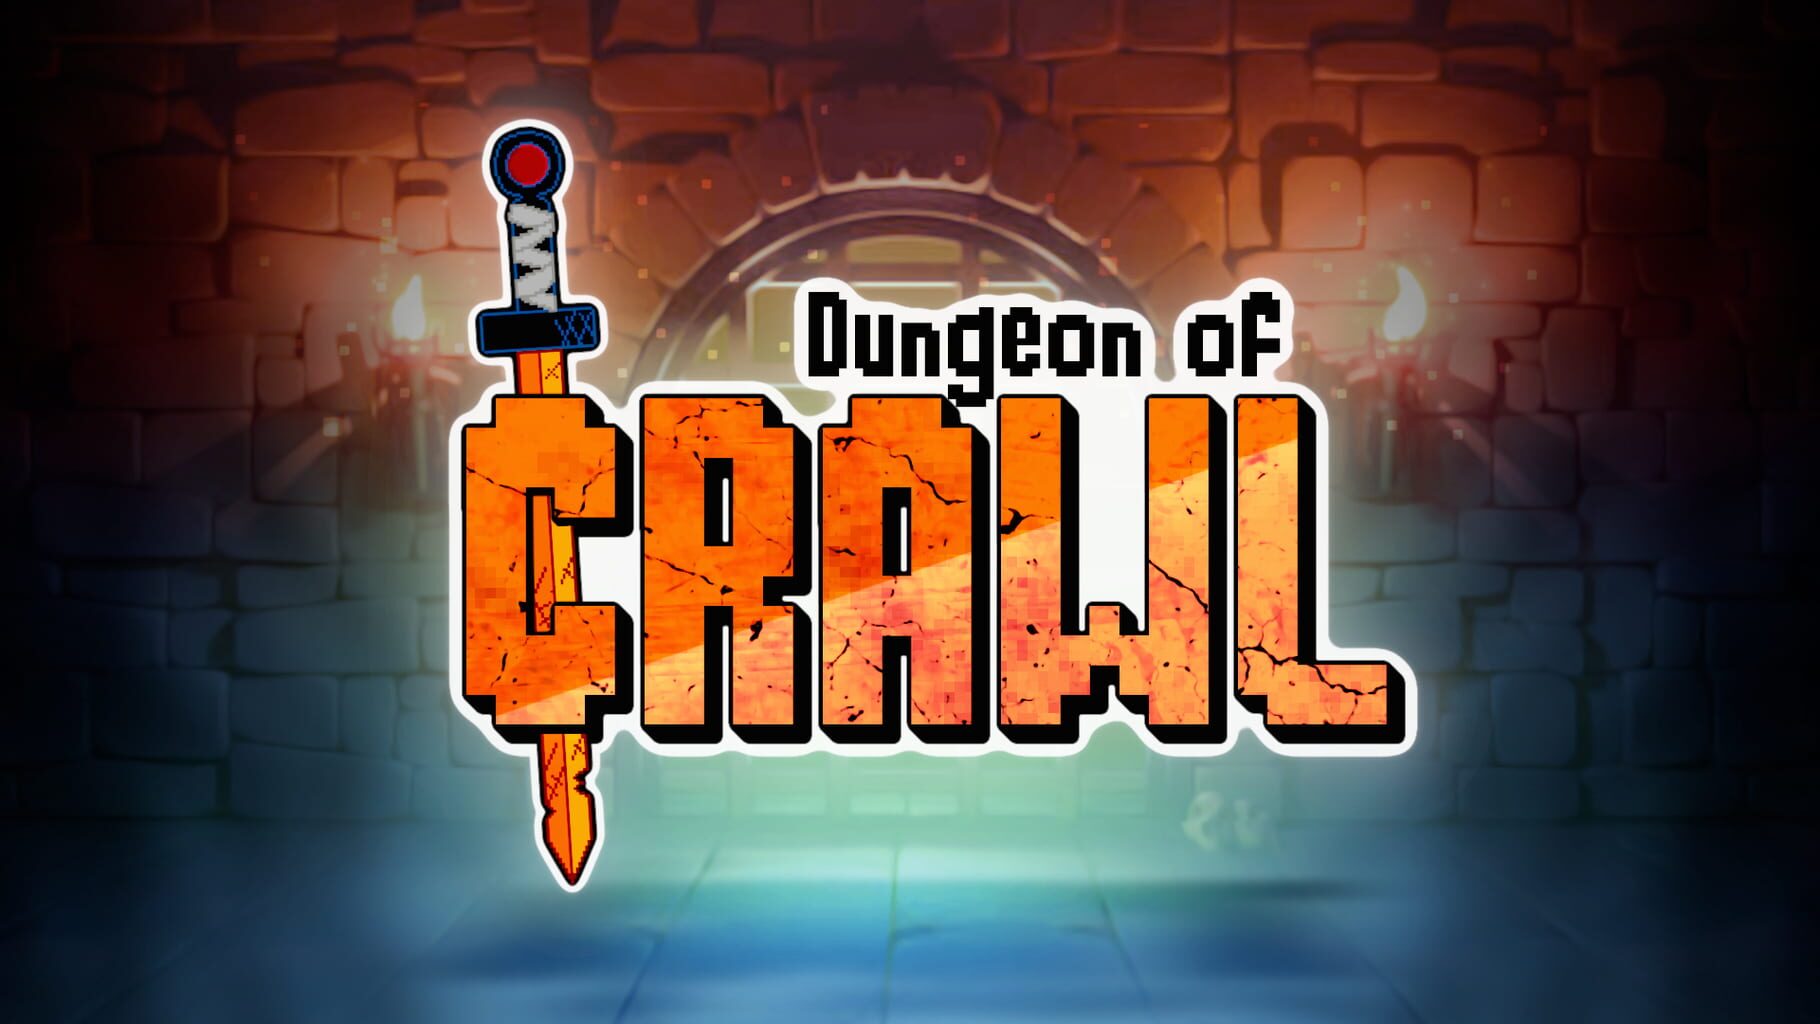 Dungeon of Crawl artwork